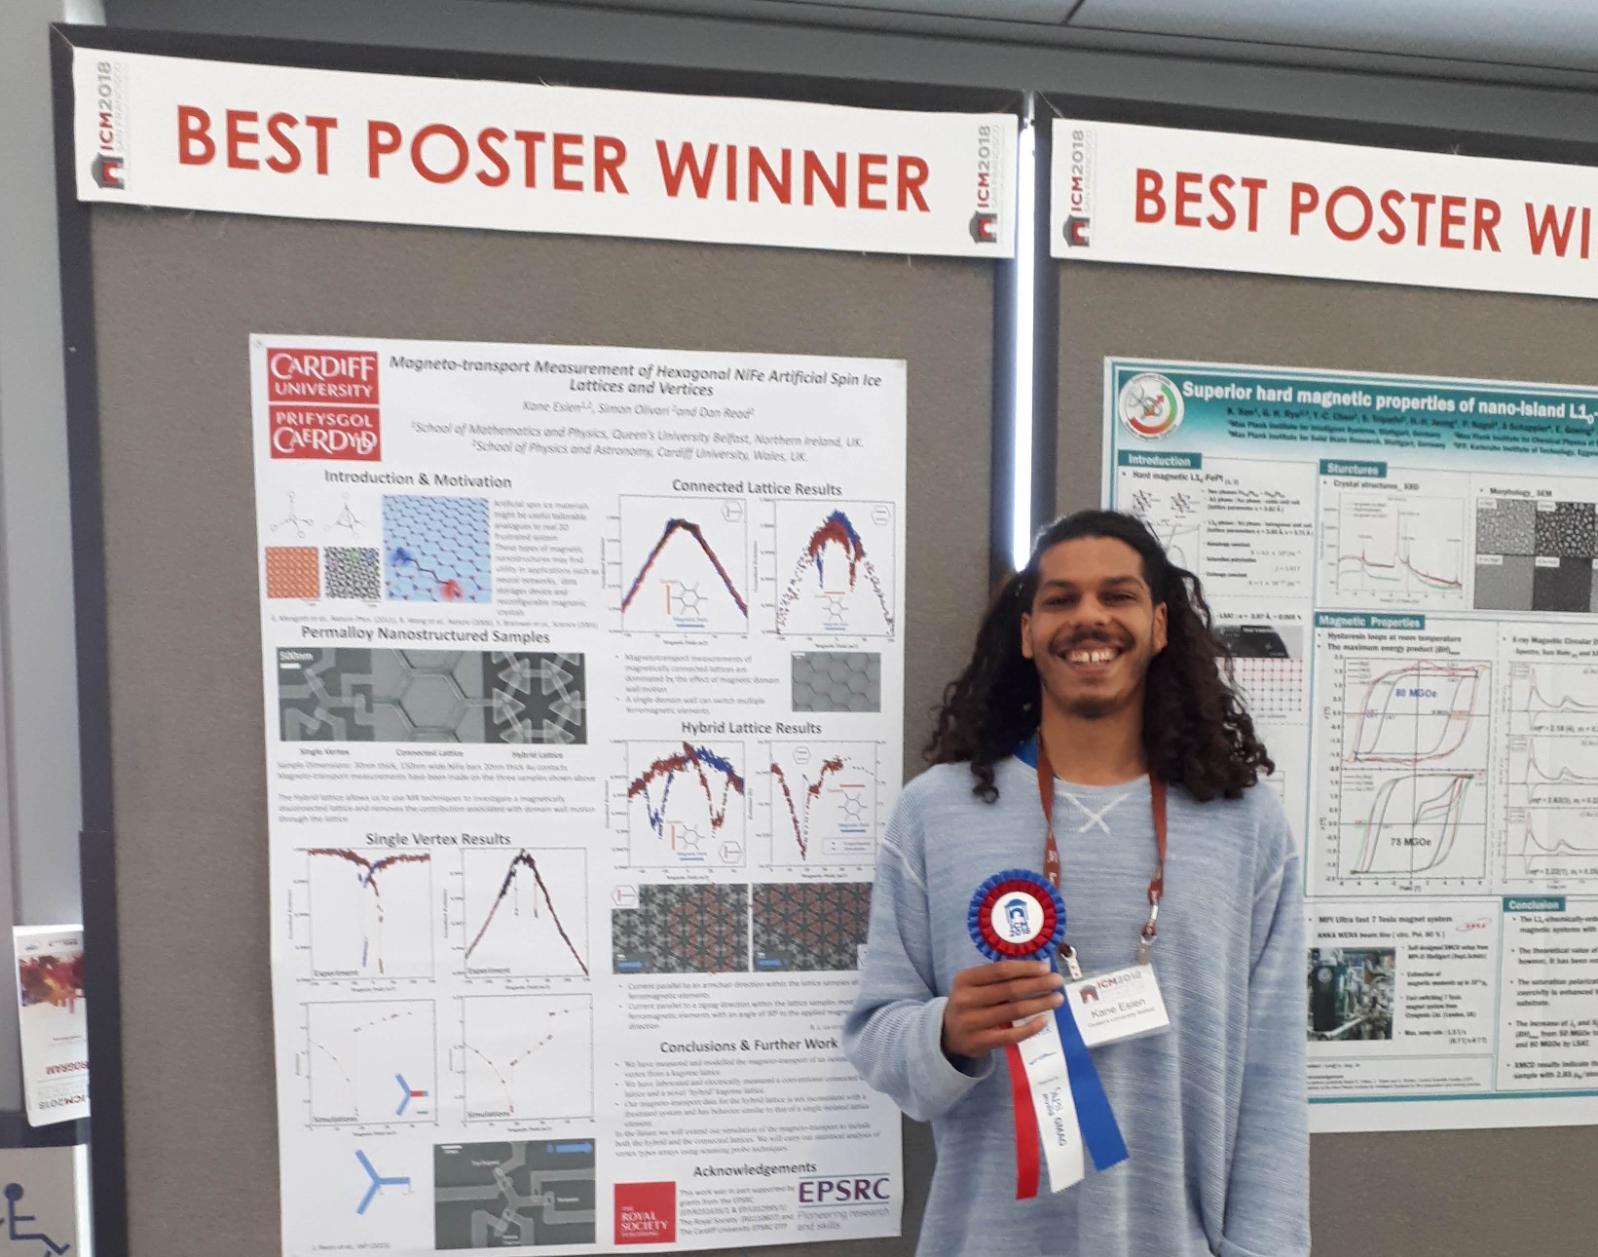 Dr Kane Esien winning Best Poster Prize at 2018 International Conference on Magnetism in San Francisco, July 2018